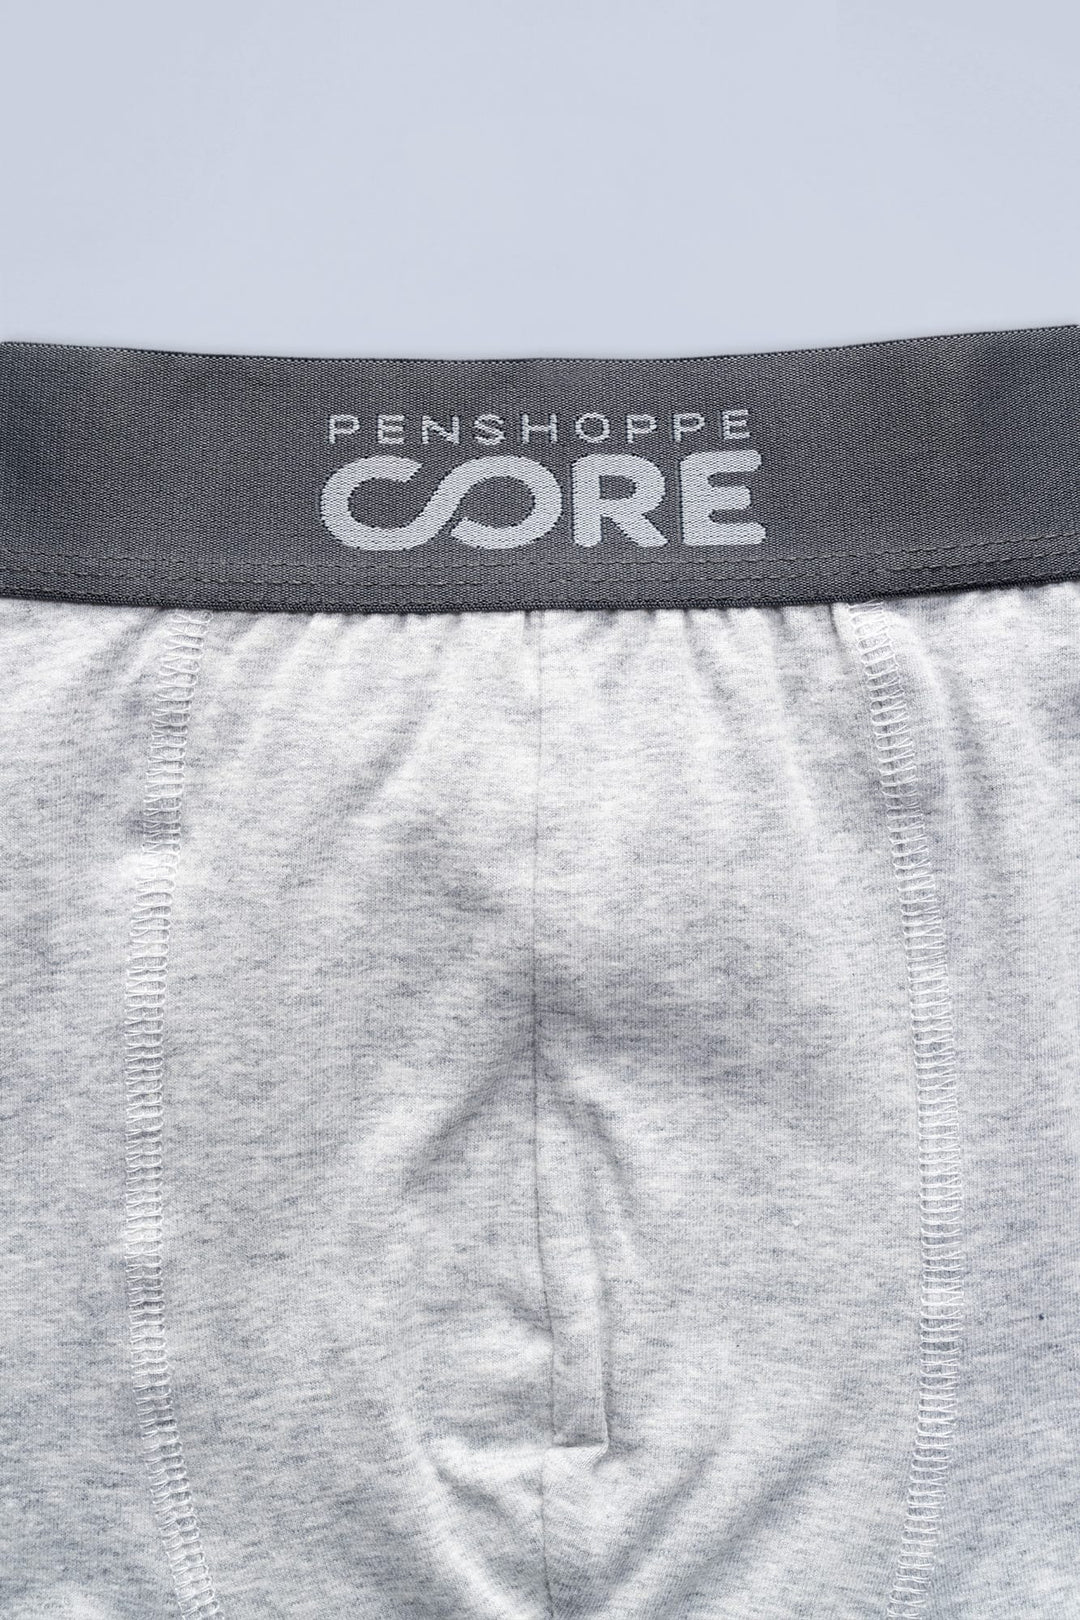 Penshoppe Core Men's Boxer Briefs